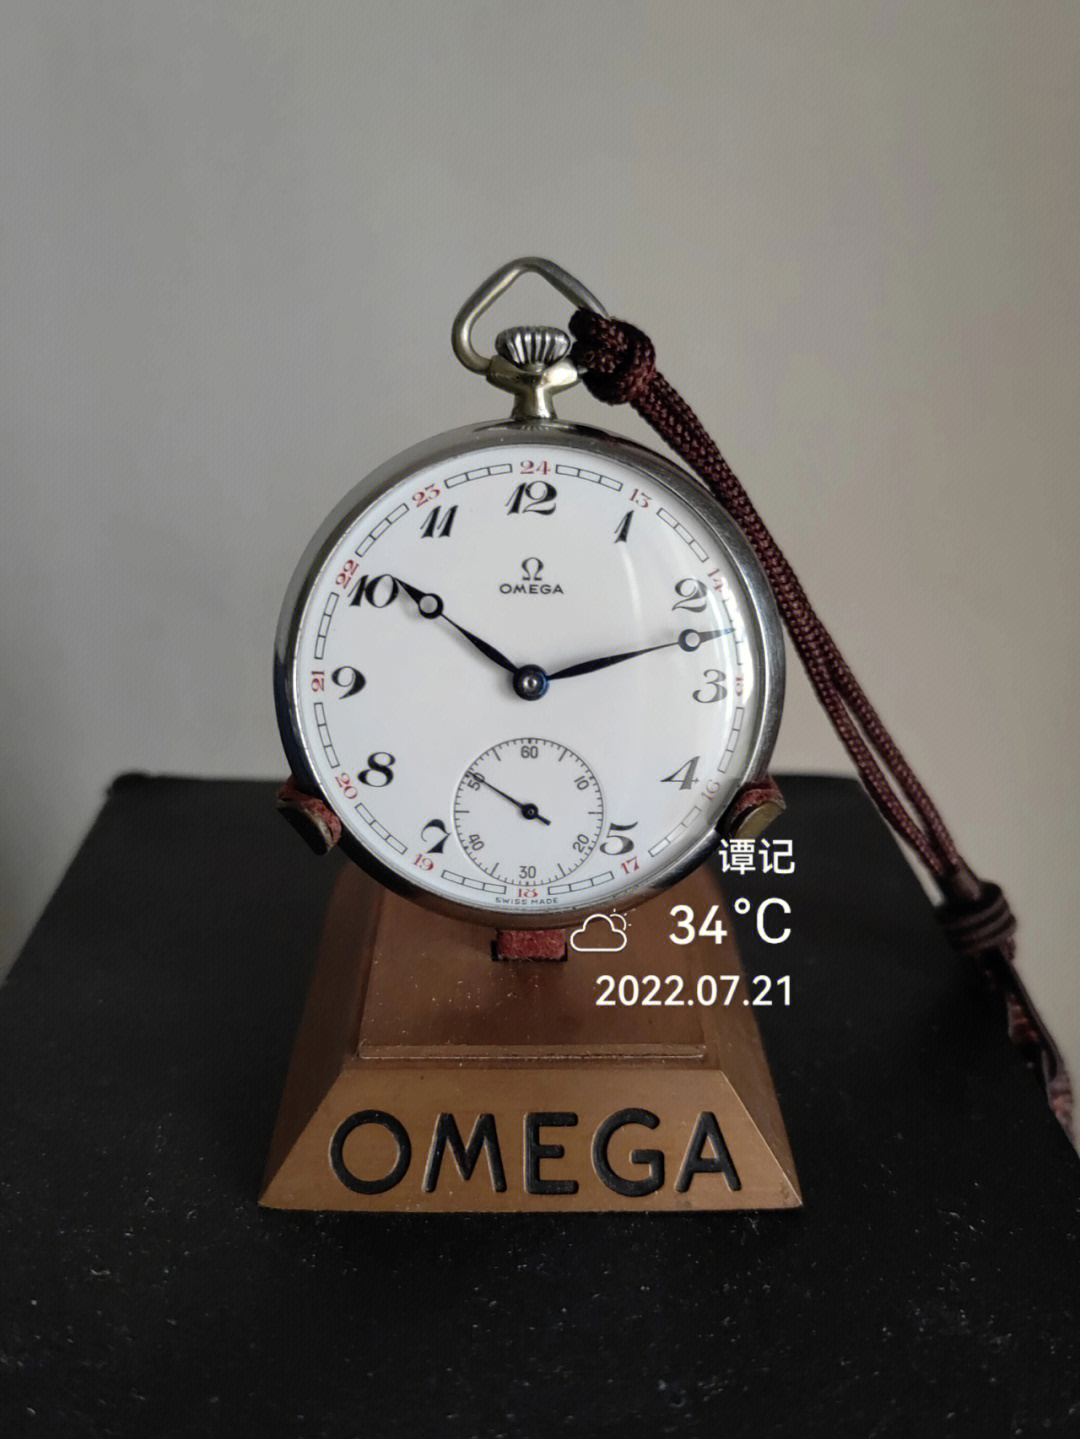 欧米茄(omega,早期中译为"亚米茄)产品作为计时器,自此这家于1848年